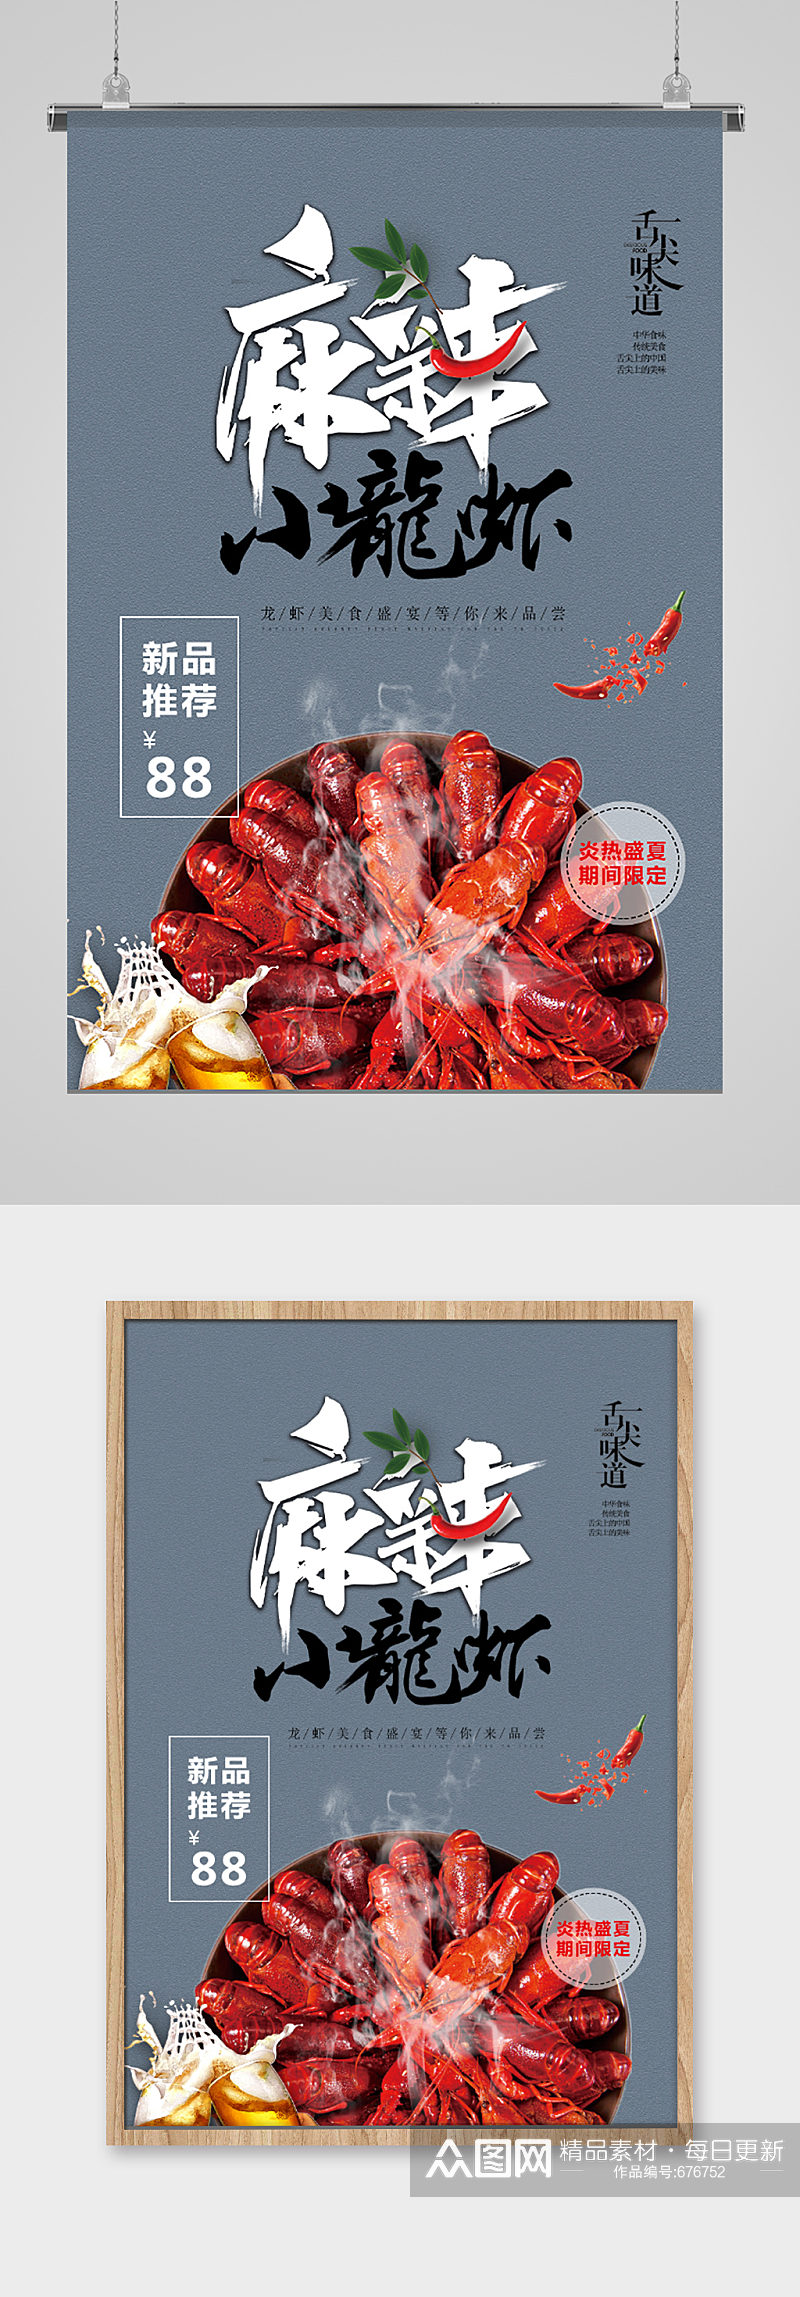 麻辣小龙虾创意时尚宣传海报素材